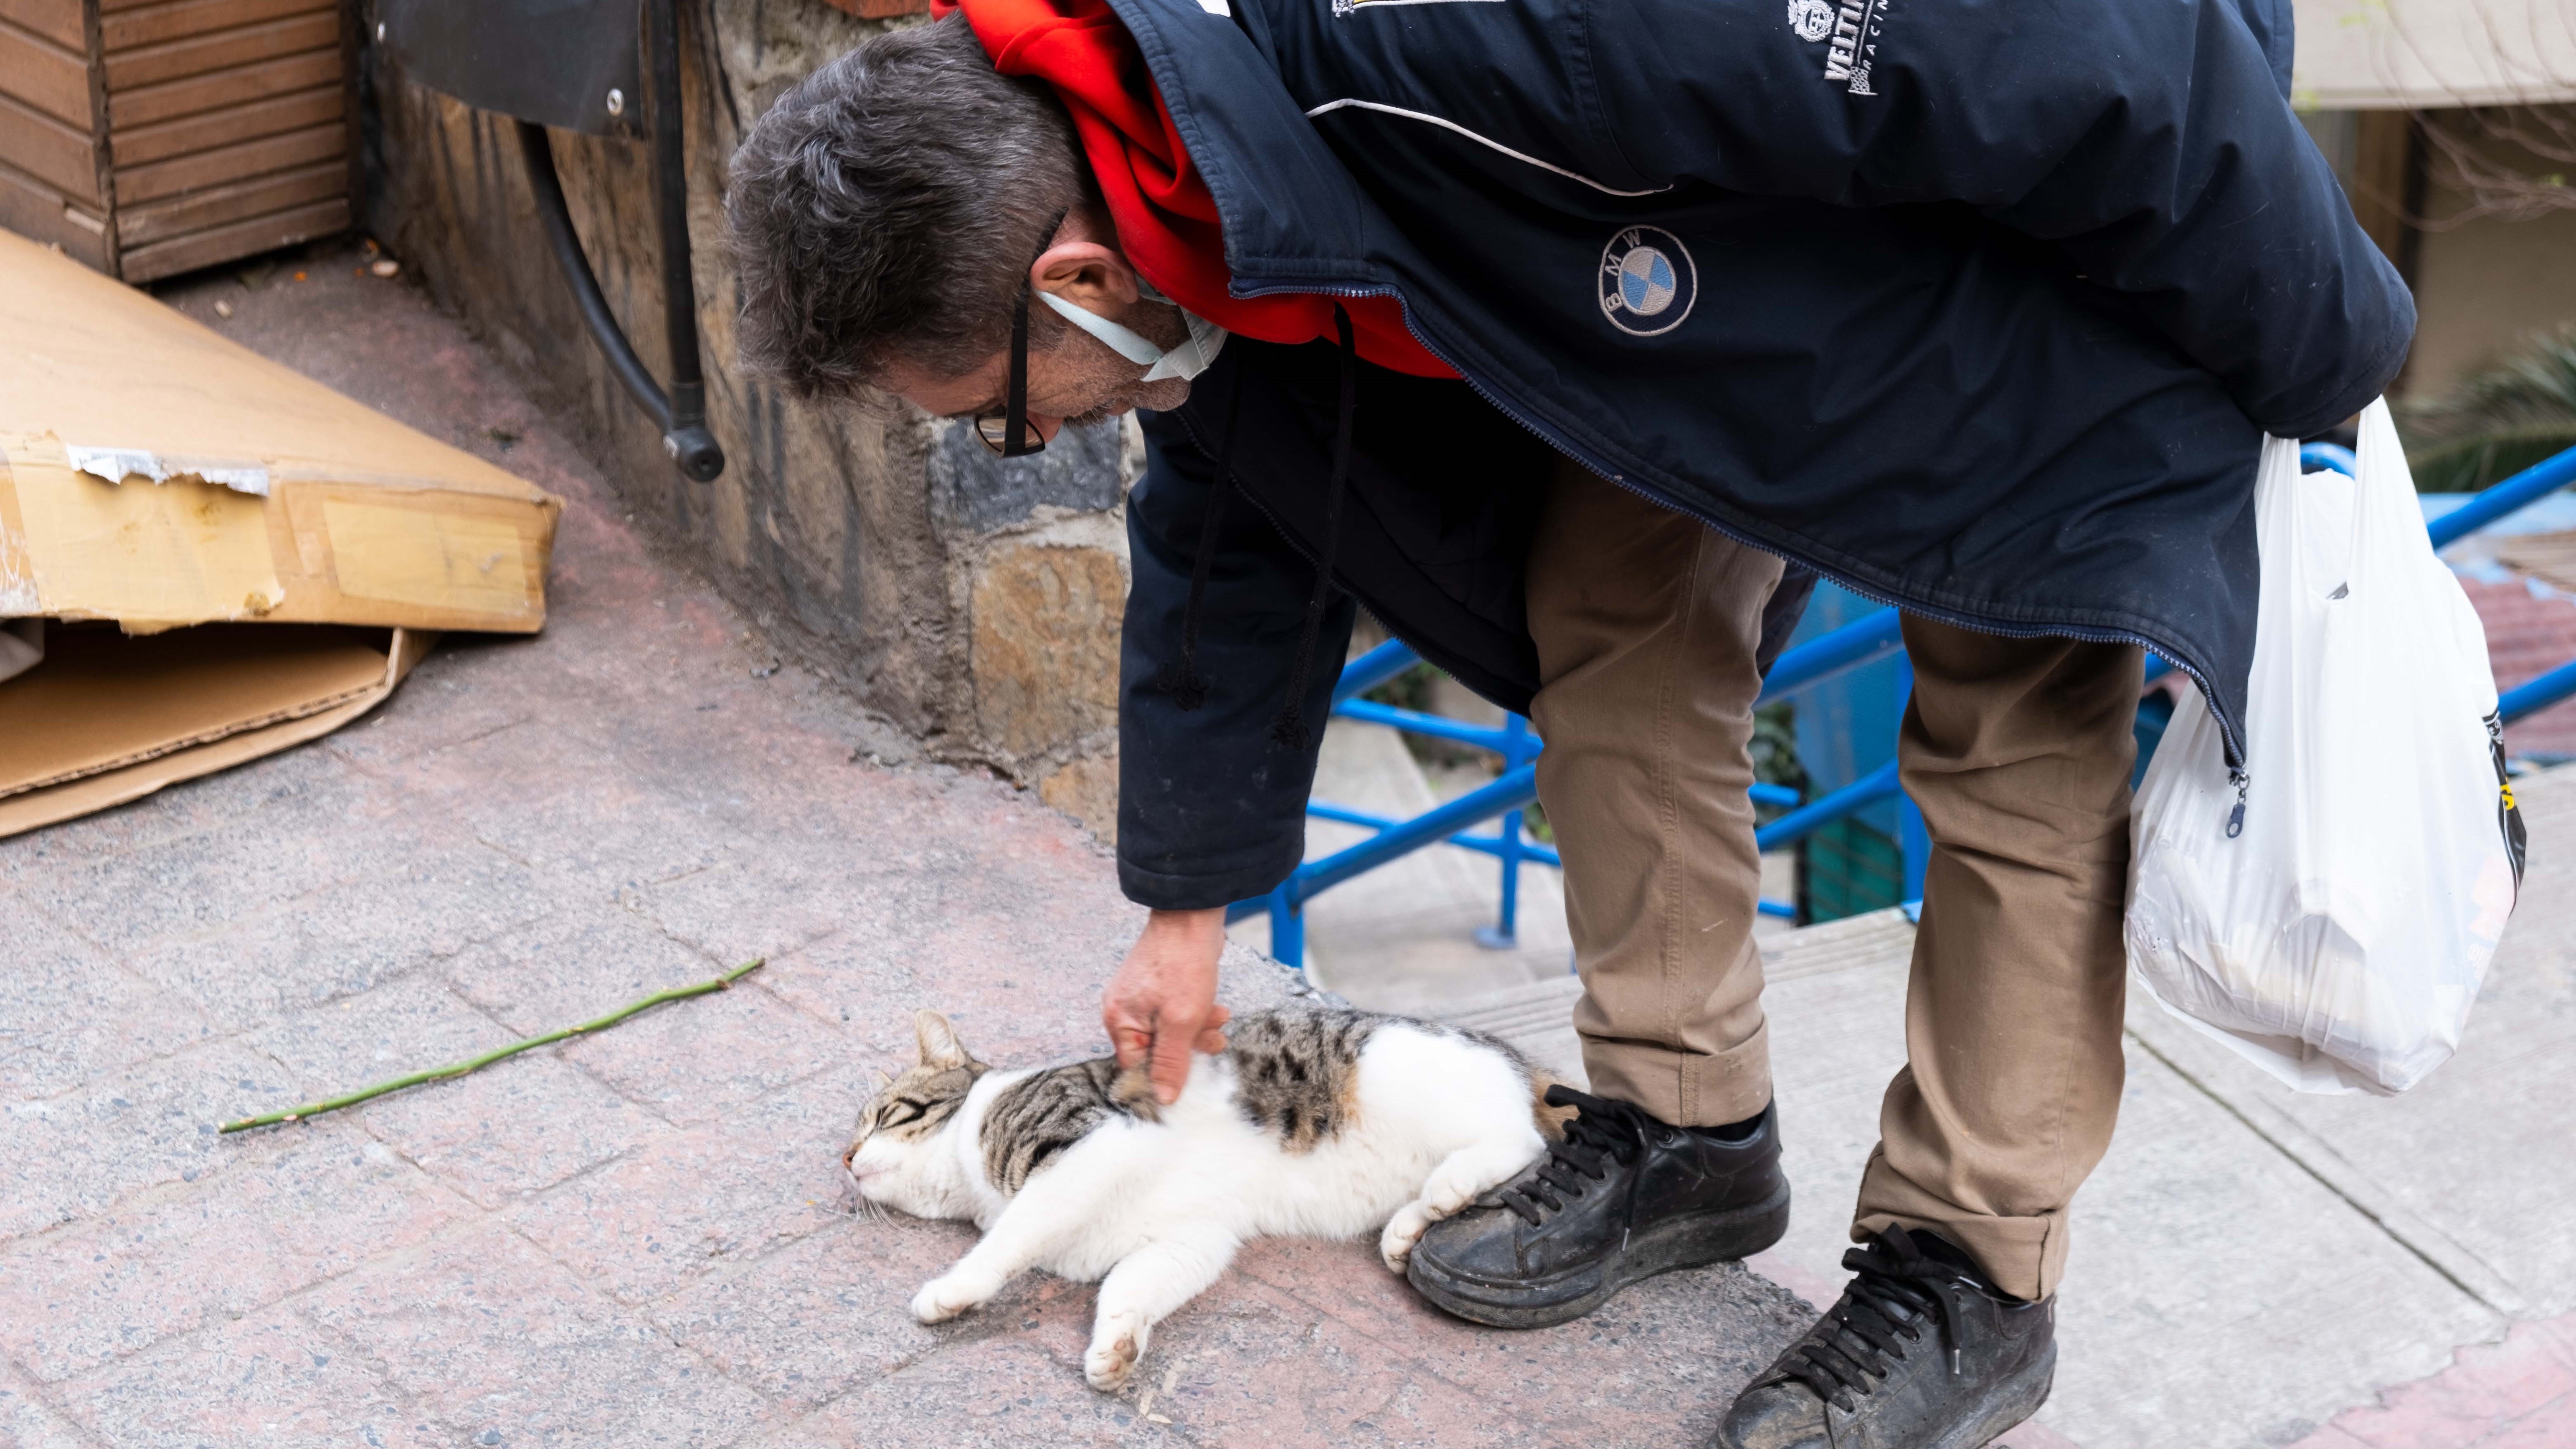 رجل يربت على قطة ضالة في أحد شوارع إسطنبول. Man strokes a stray cat on an Istanbul street (photo: Volkan Kisa)